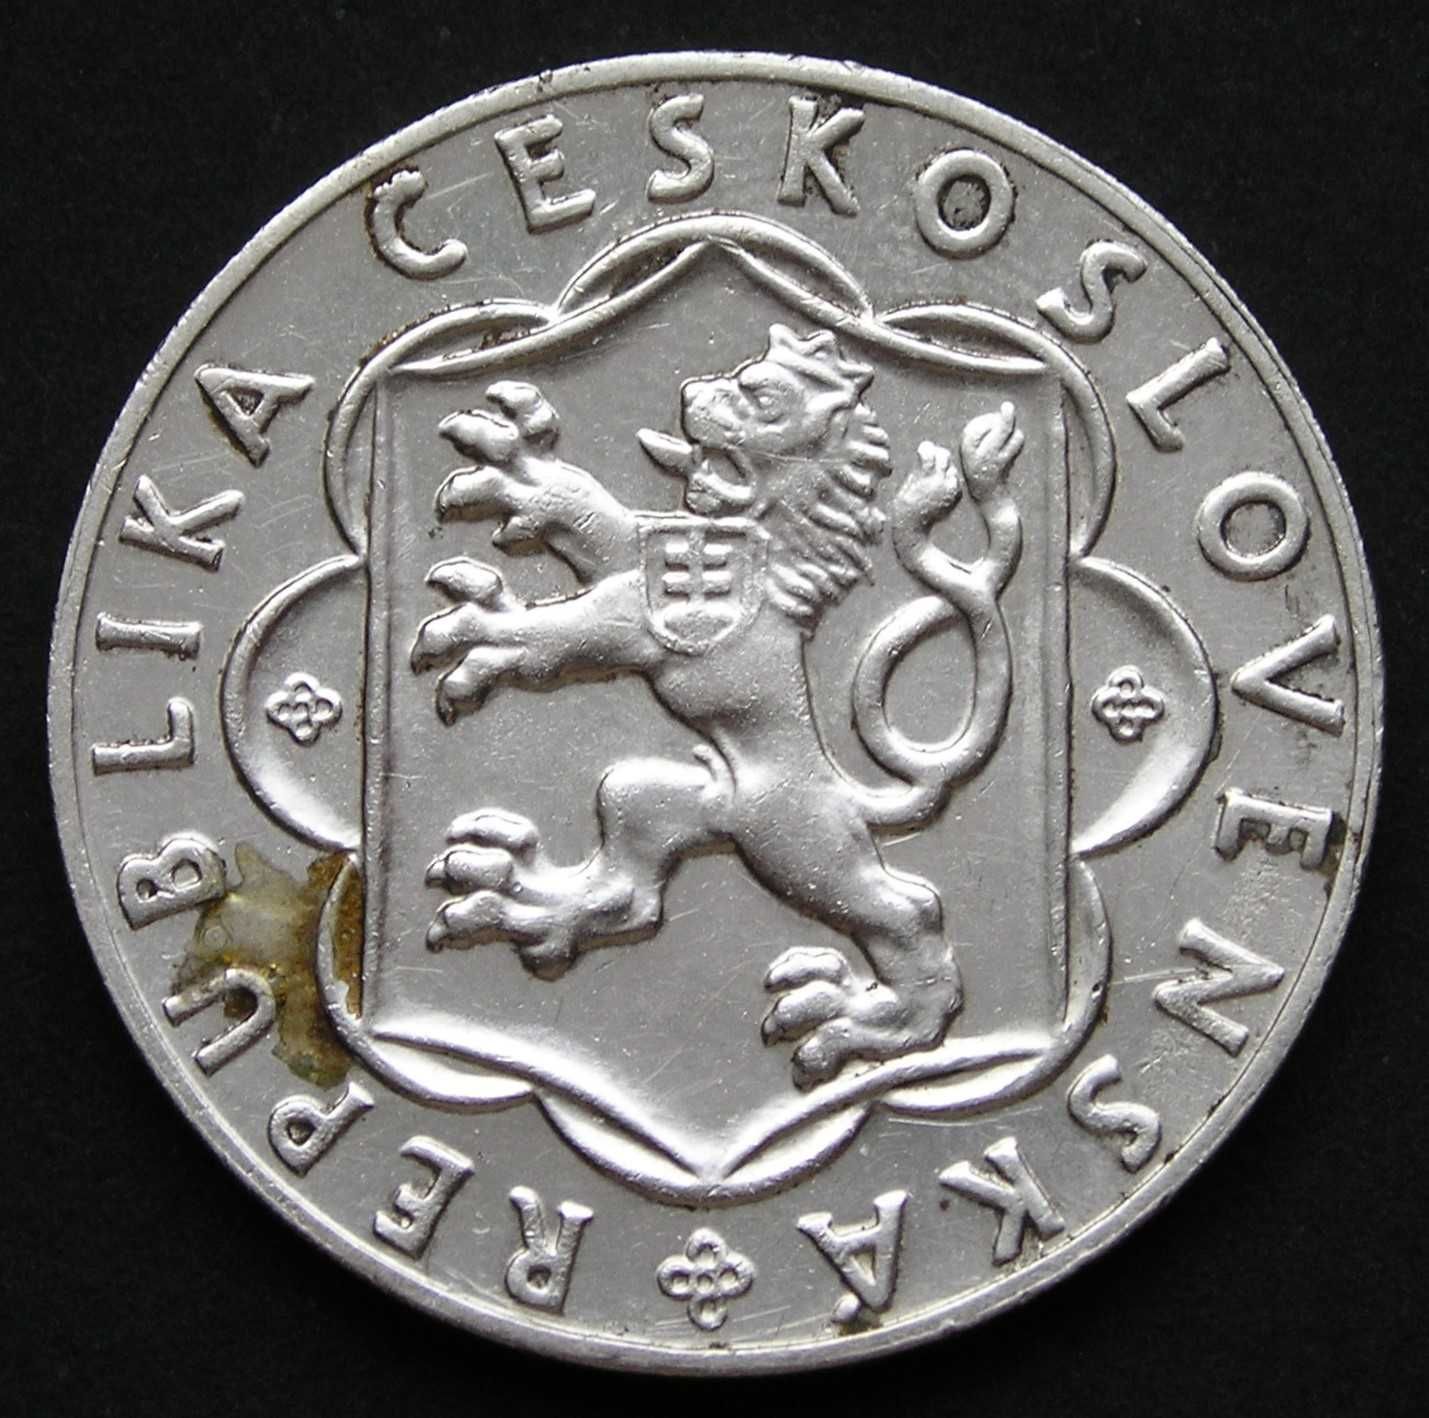 Czechosłowacja 10 koron 1954 - srebro